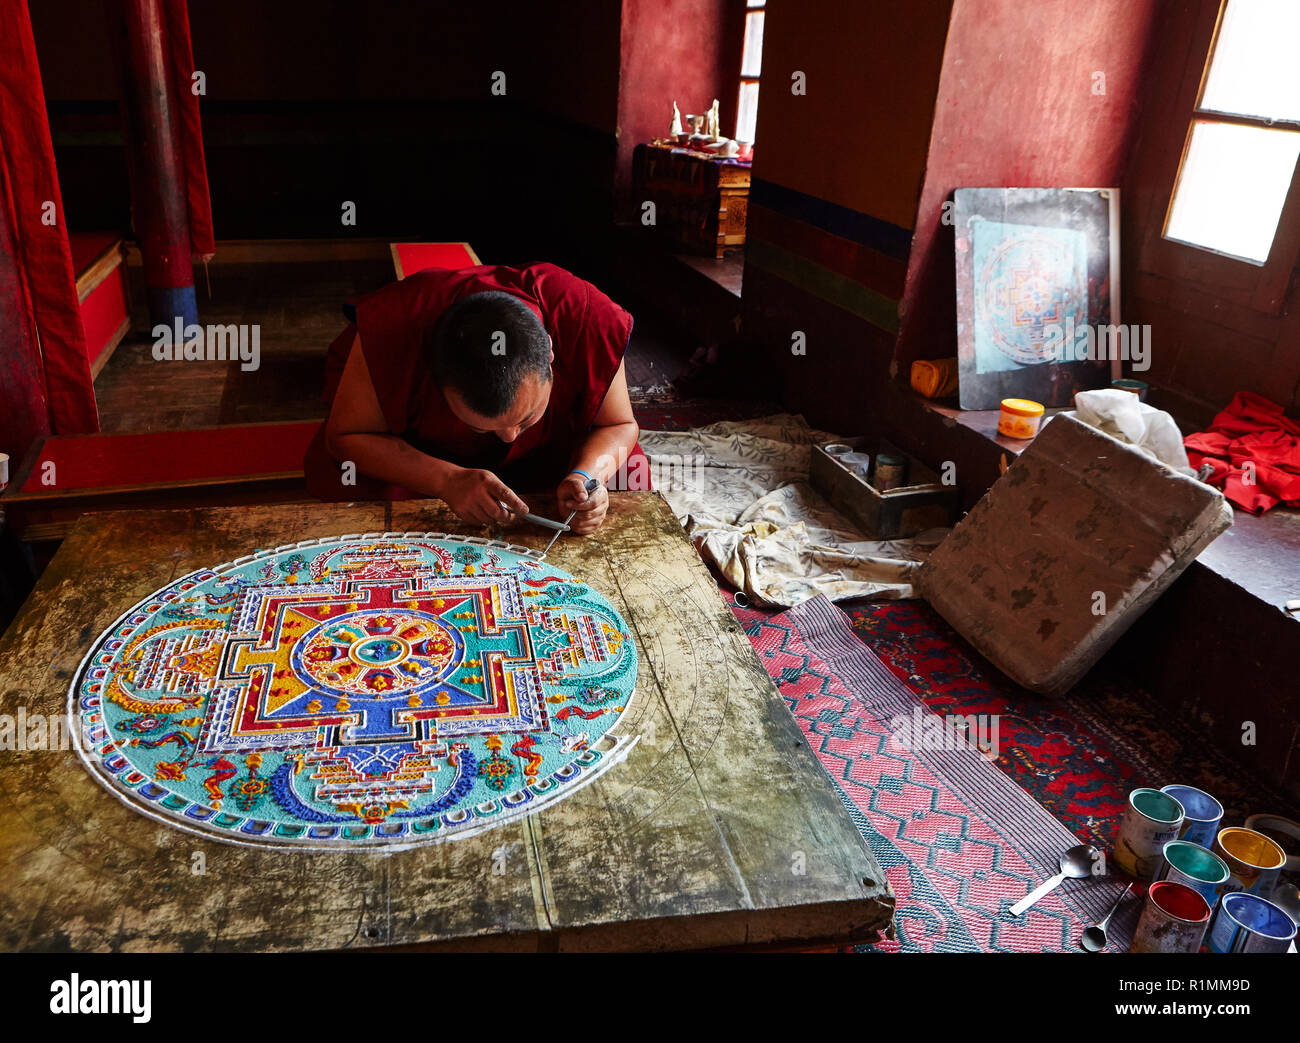 Moine bouddhiste créant un mandala de sable de couleur dans le monastère de Lamayuru.Ladakh, Jammu-et-Cachemire, Inde Banque D'Images